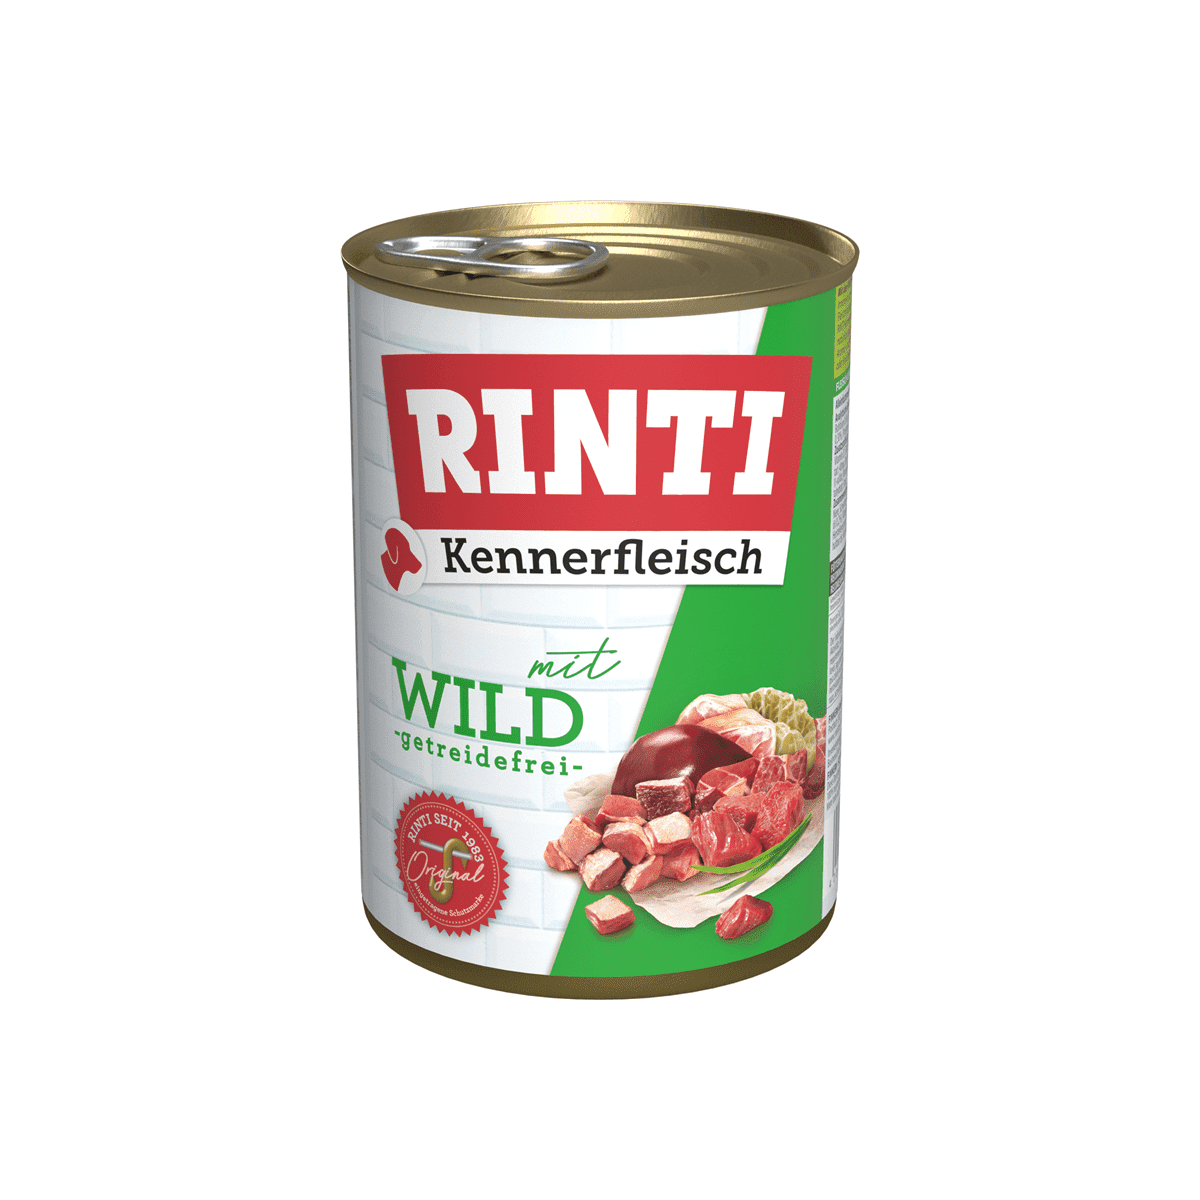 Artikel mit dem Namen Rinti Kennerfleisch Wild im Shop von zoo.de , dem Onlineshop für nachhaltiges Hundefutter und Katzenfutter.